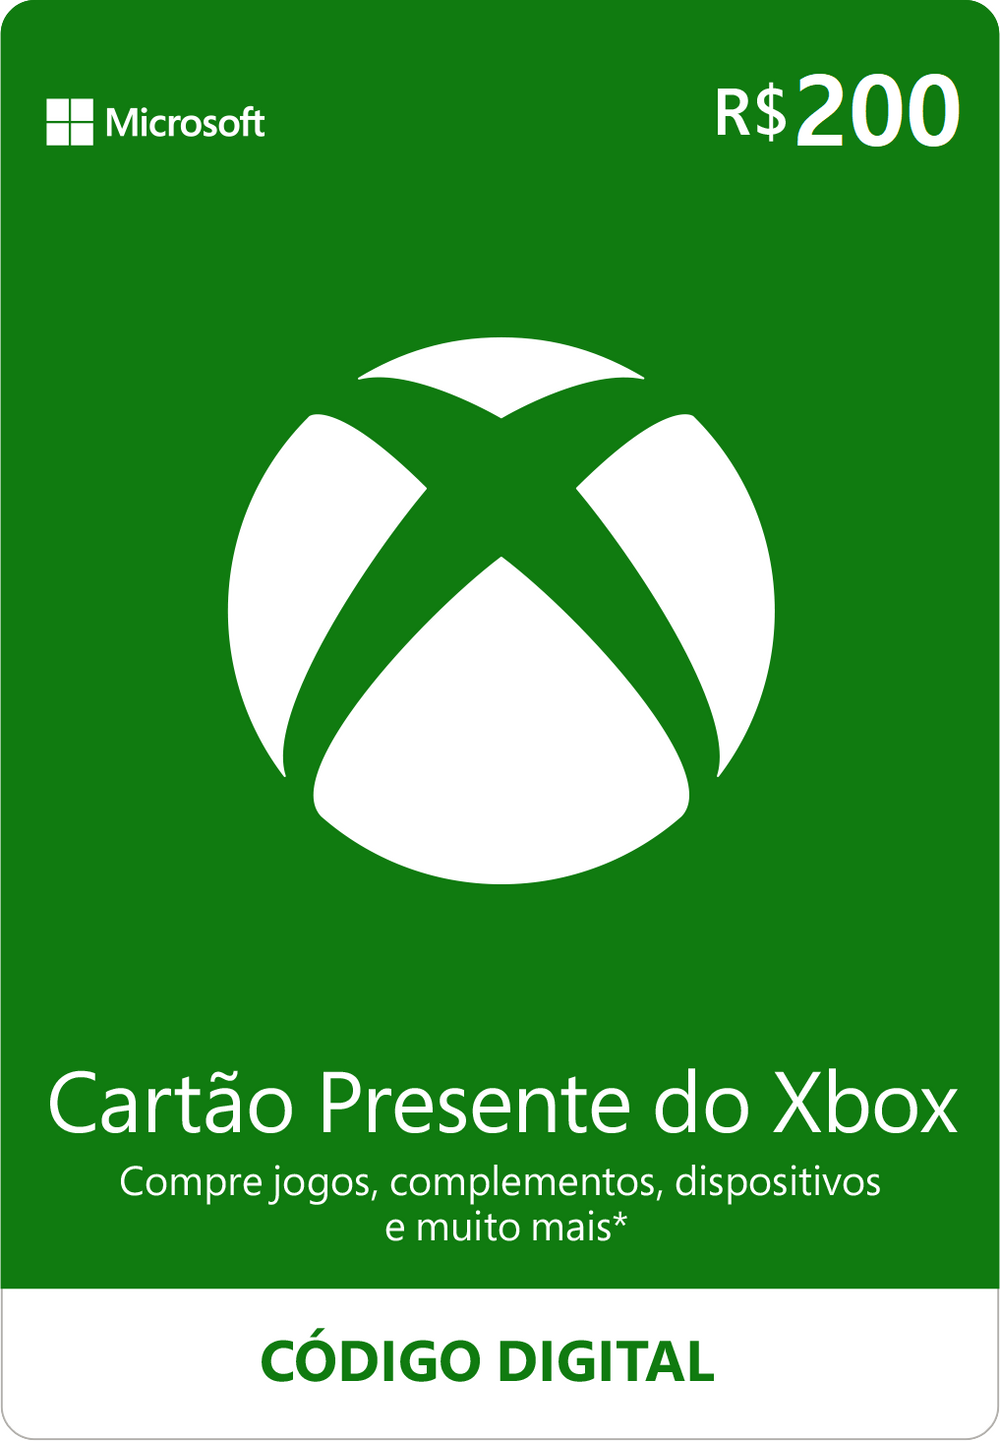 Cartão Presente do Xbox: R$200